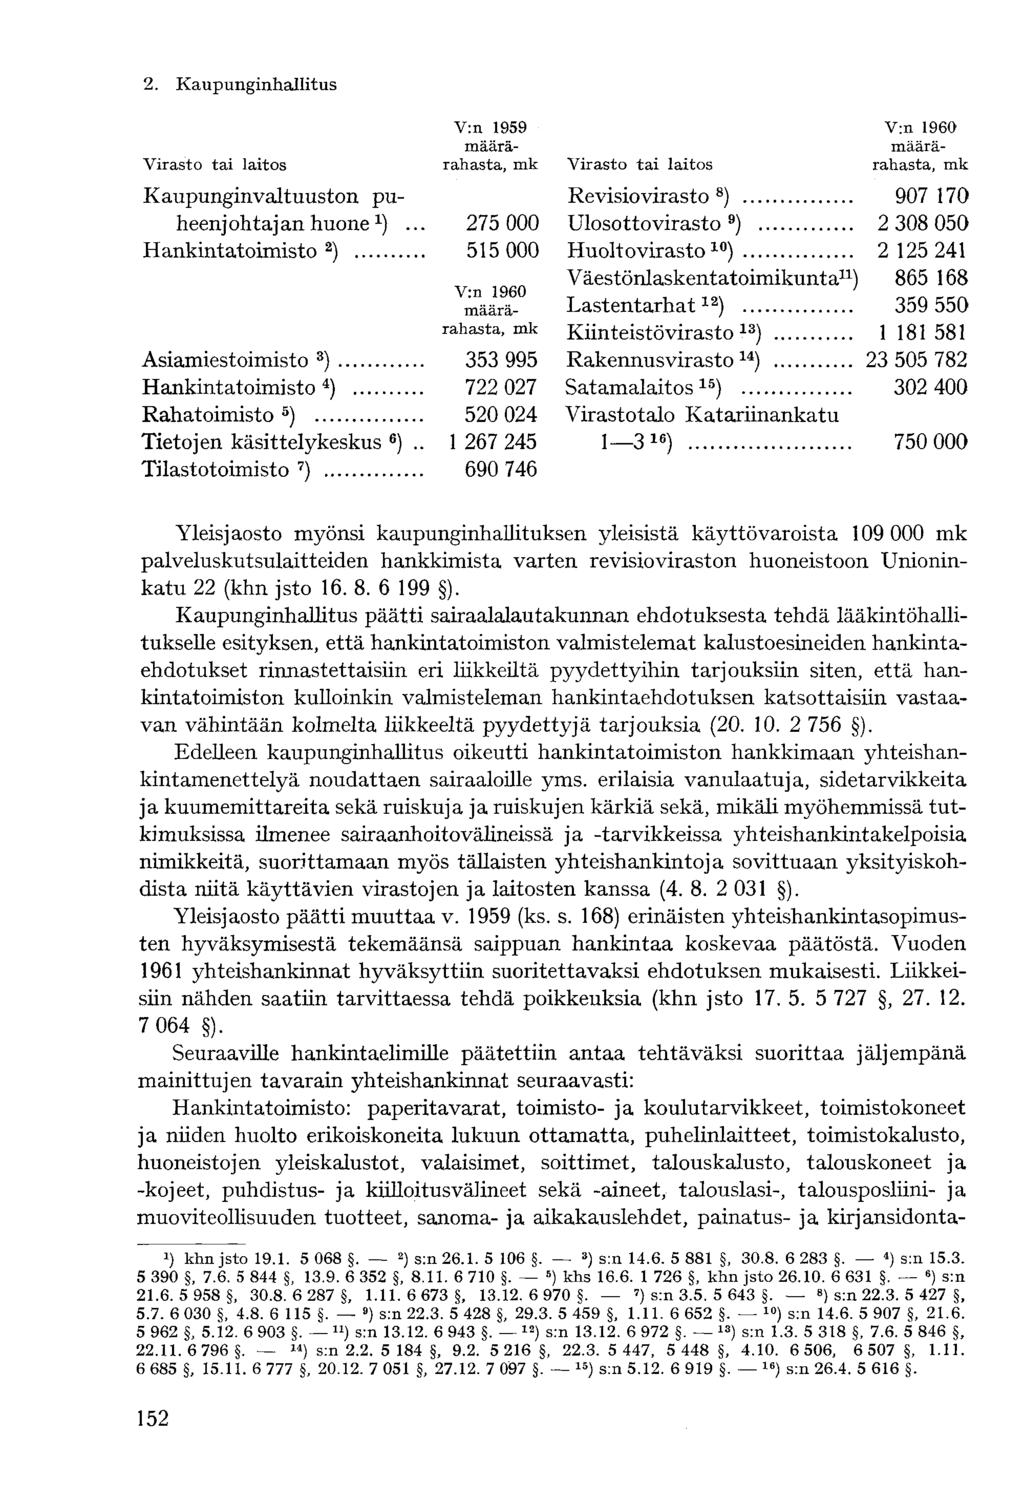 Virasto tai laitos V:n 1959 määrärahasta, mk Kaupunginvaltuuston puheenj ohtaj an huone ^.